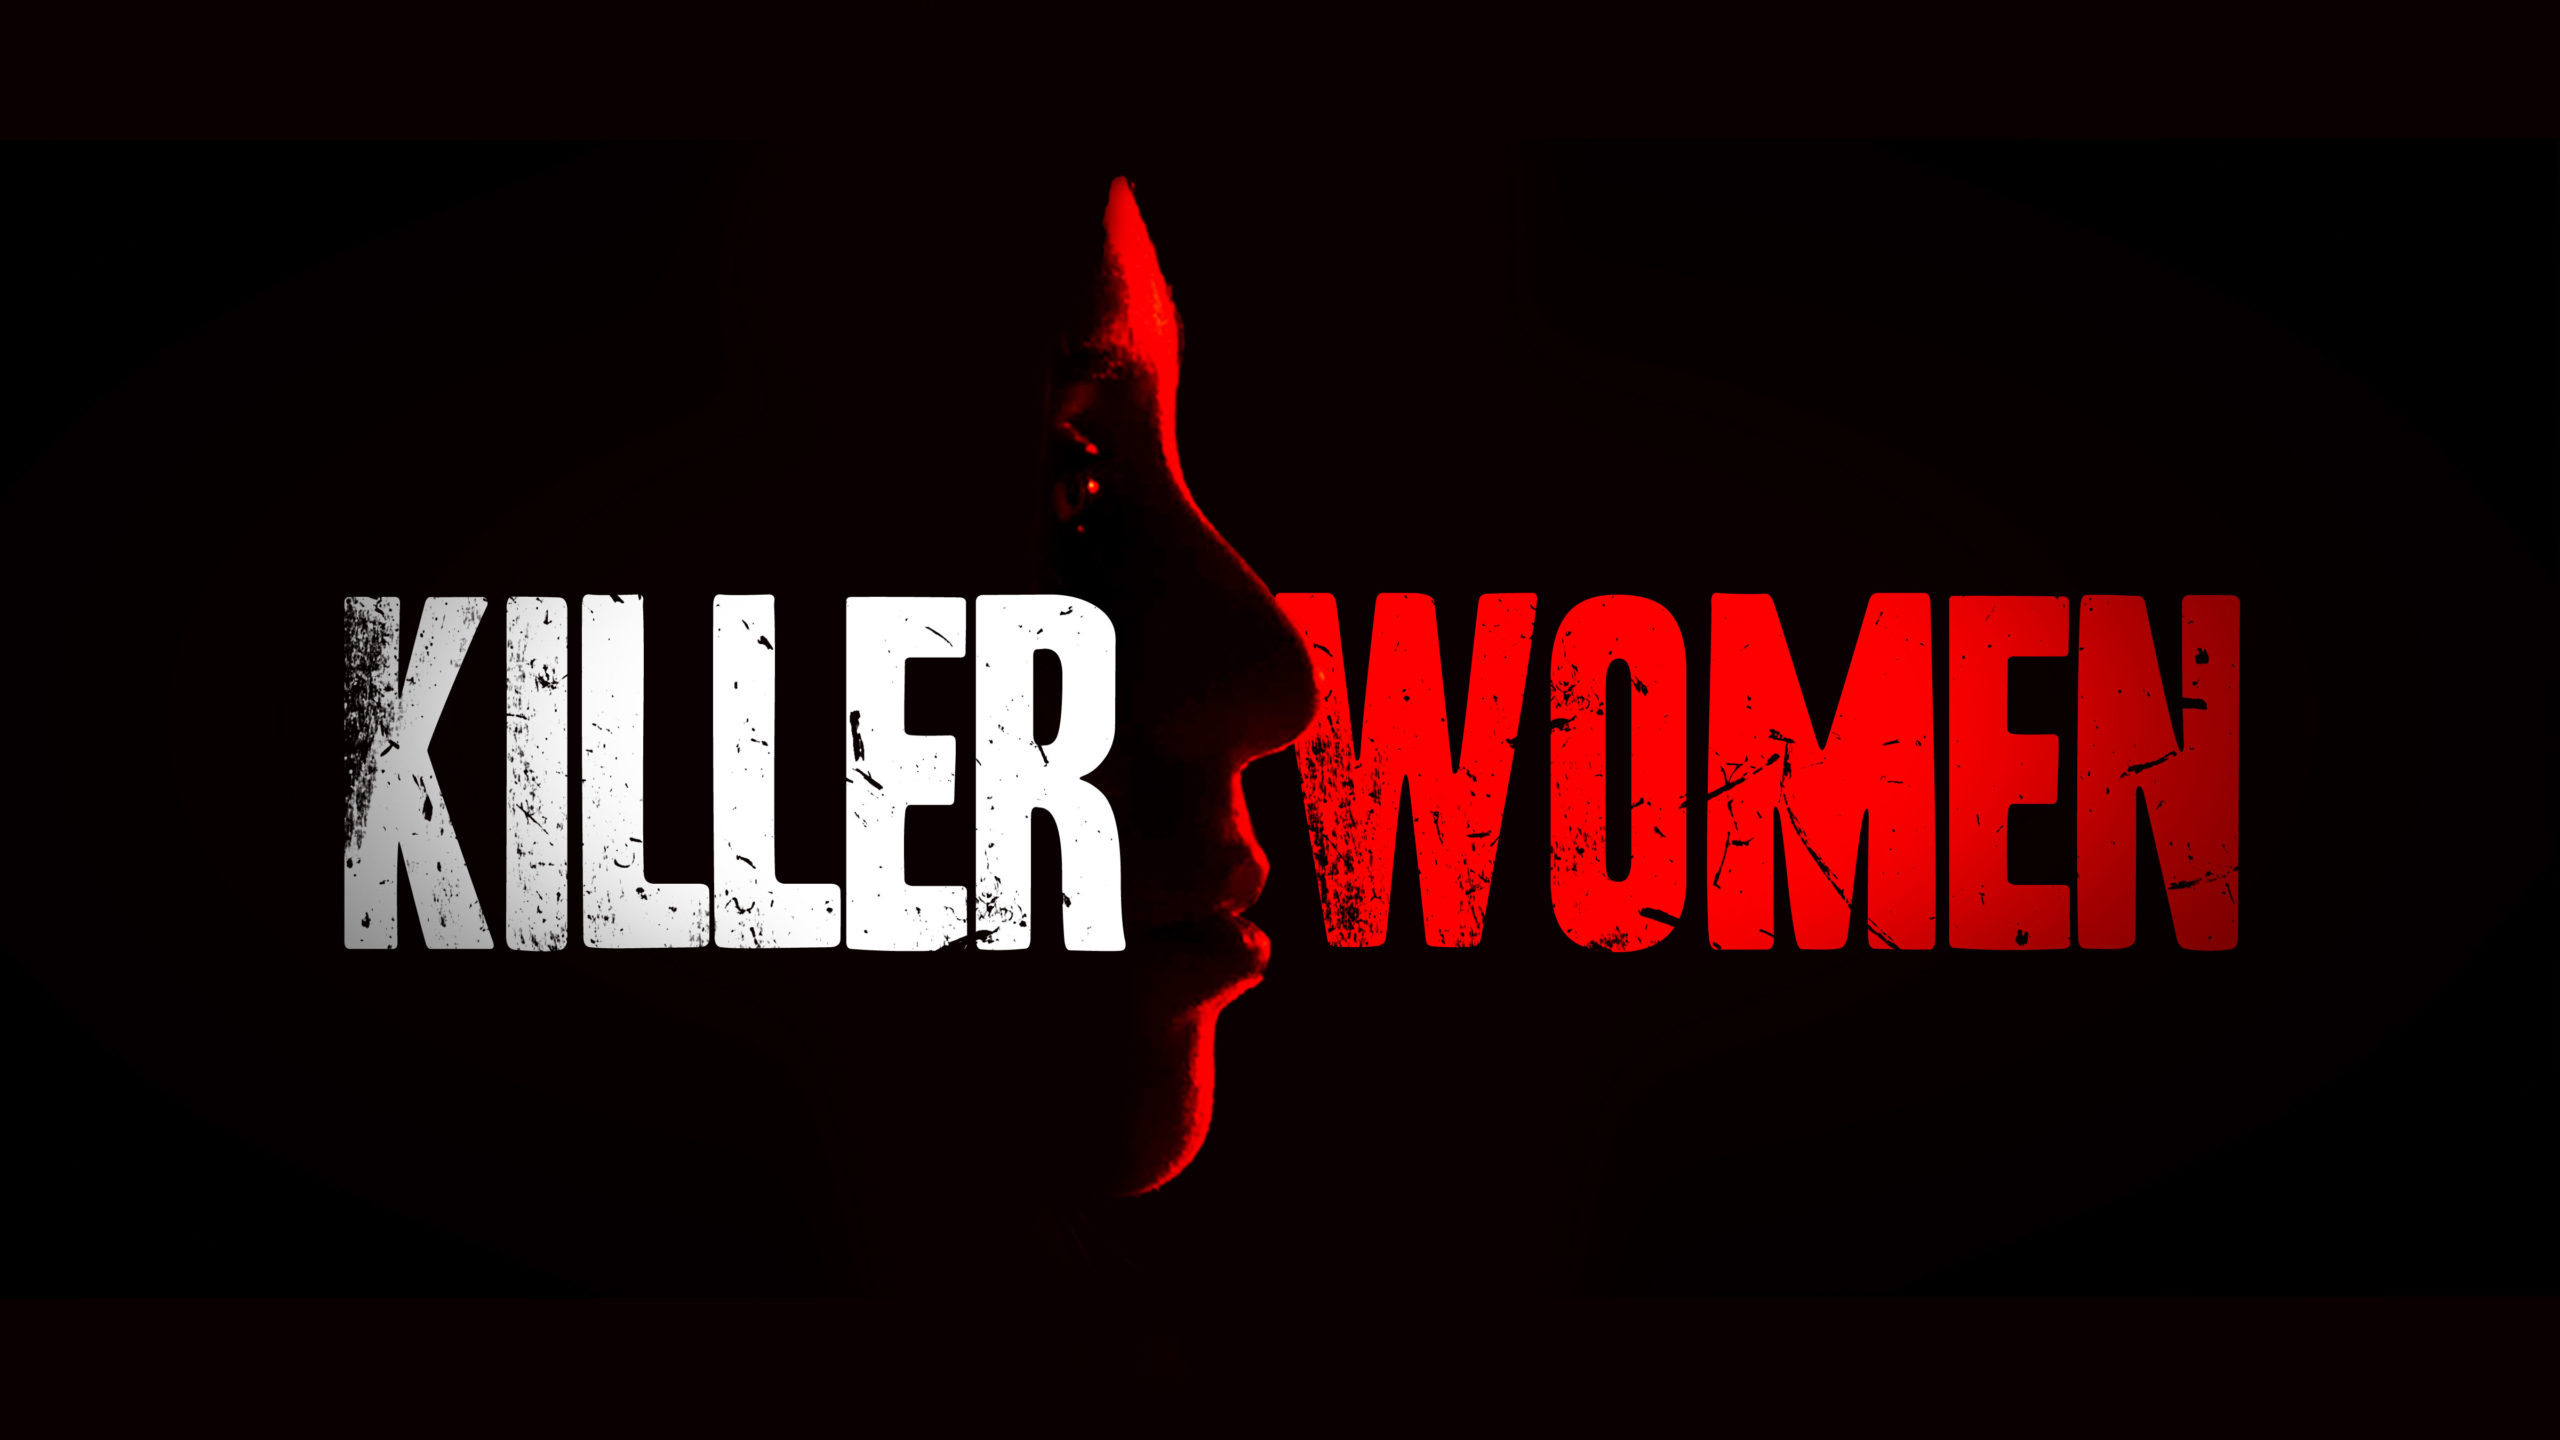 KillerWomen_16x9